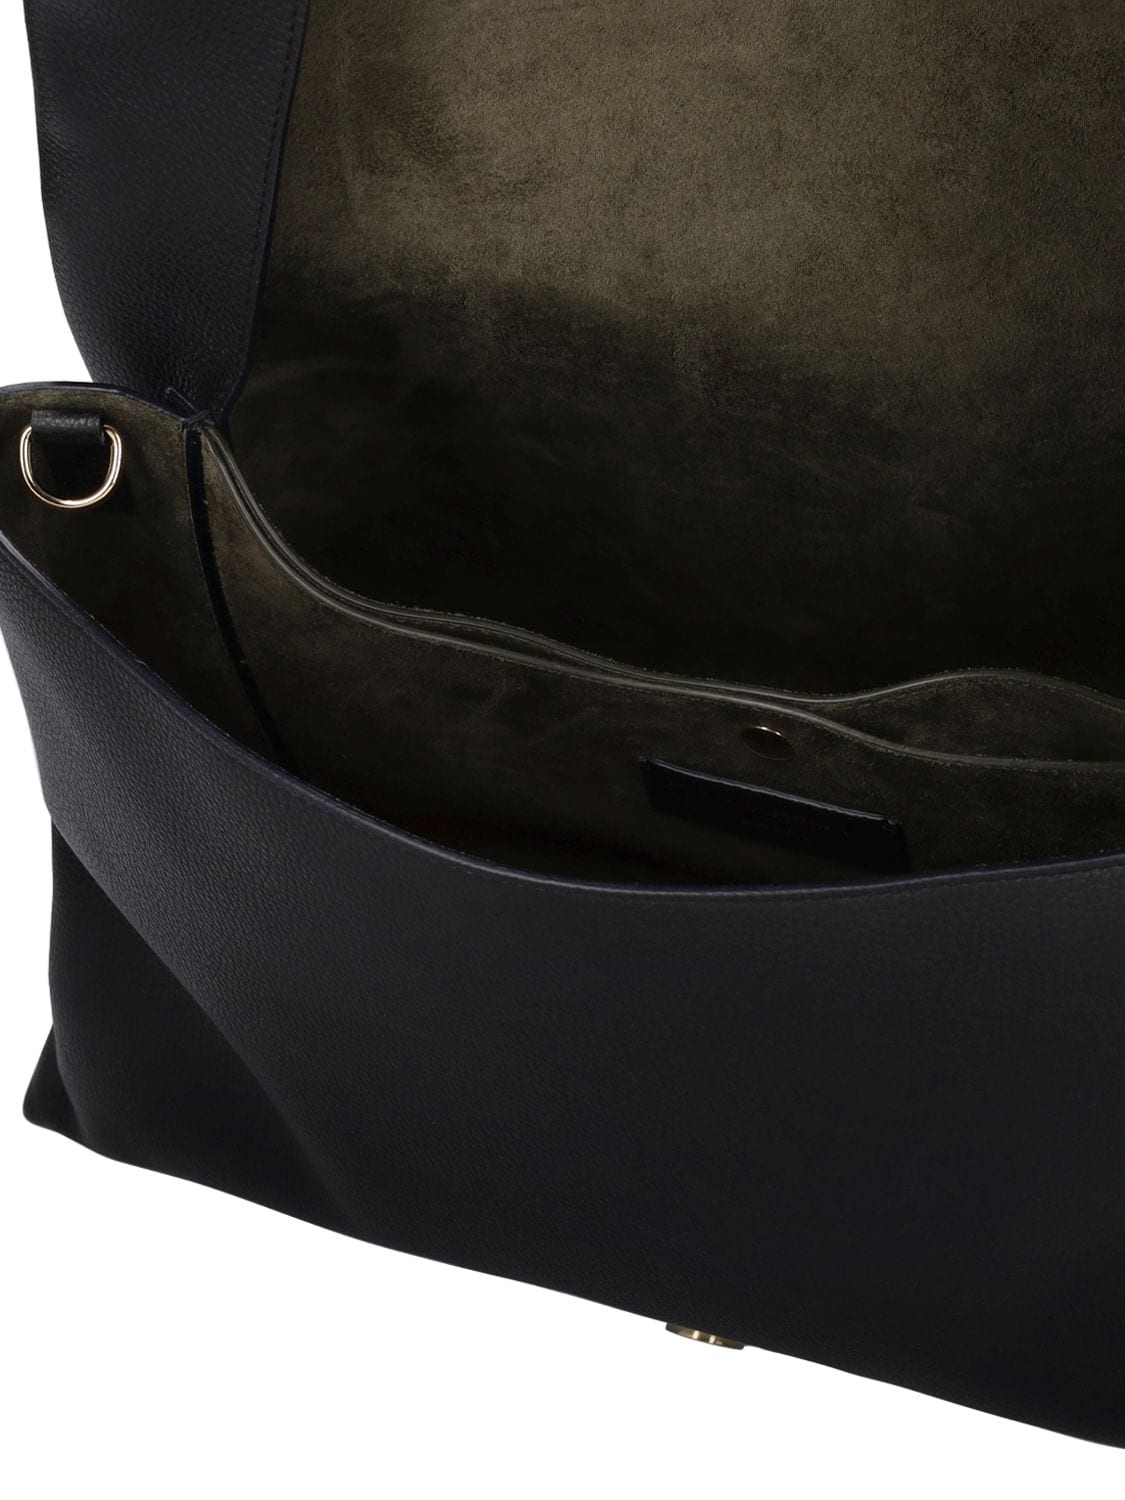 Shop Victoria Beckham Xl Soft Leather Flap Shoulder Bag In Black